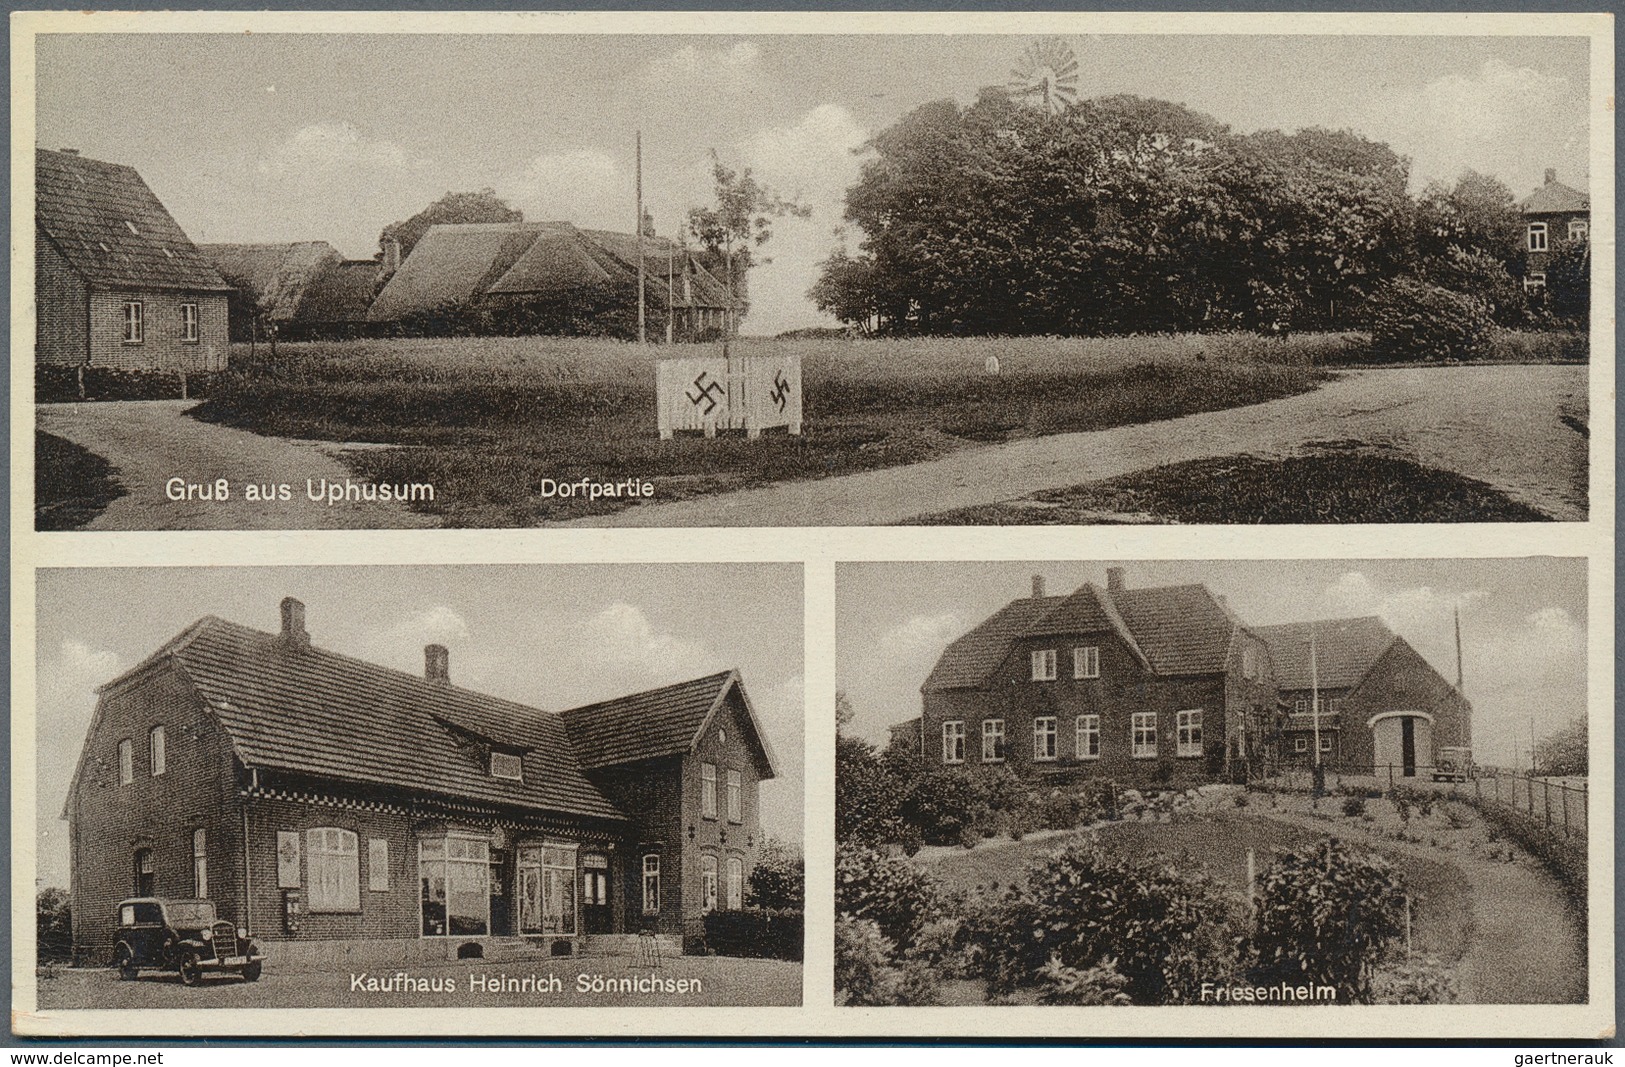 Ansichtskarten: Schleswig-Holstein: SCHLESWIG und HOLSTEIN, umfangreicher Posten mit über 450 alten